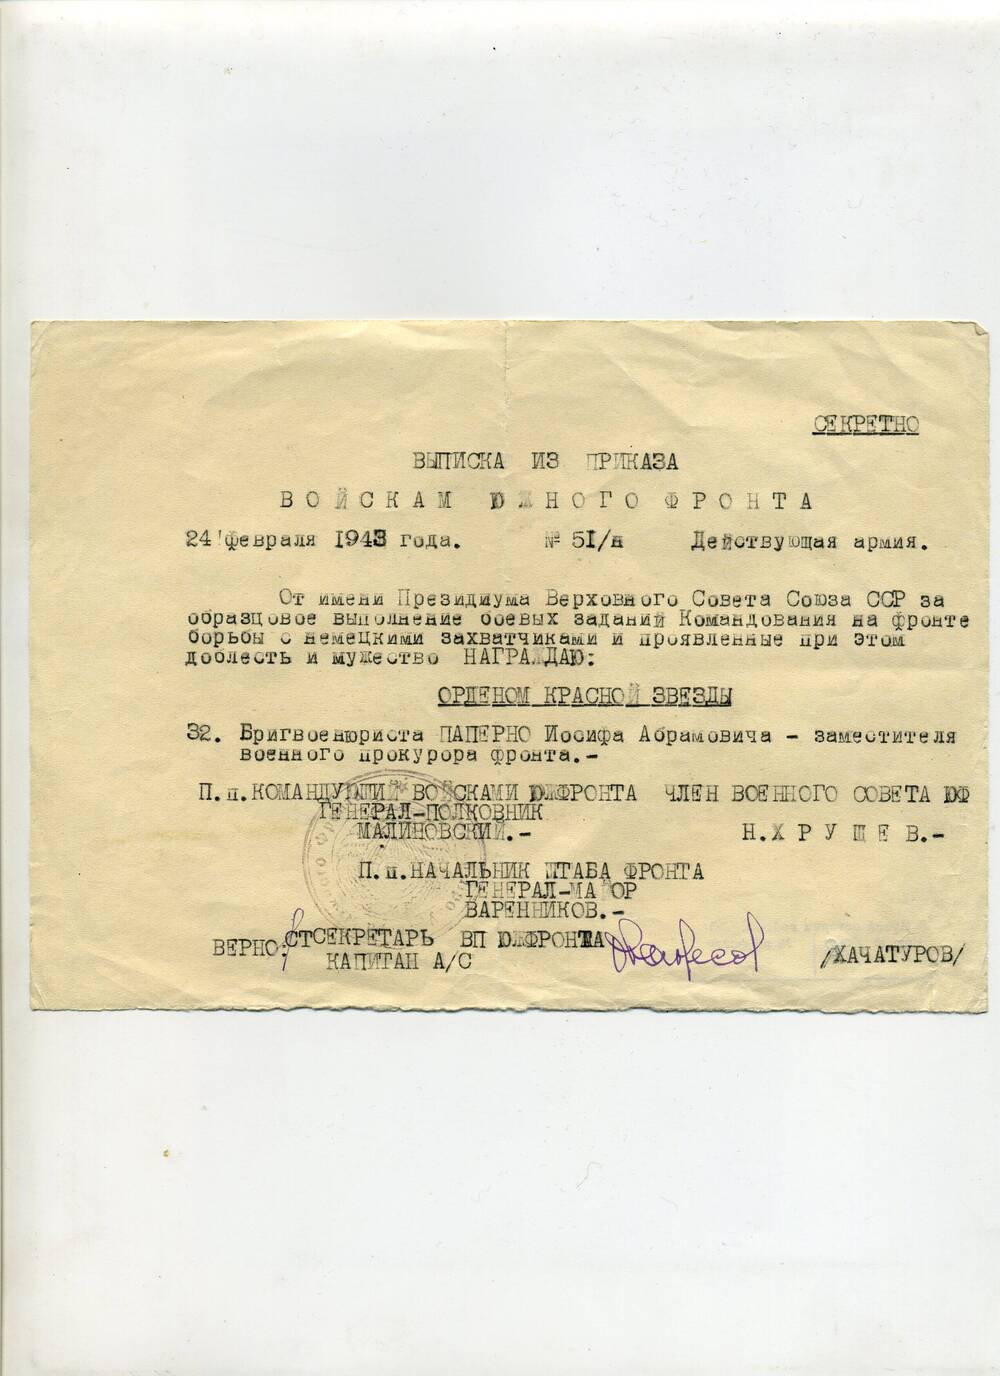 Выписка из приказа войскам Южного фронта от 24 февраля 1943 года, о награждении бригвоенюриста Паперно И.А. - заместителя военного прокурора фронта орденом Красной Звезды. Подлинник.